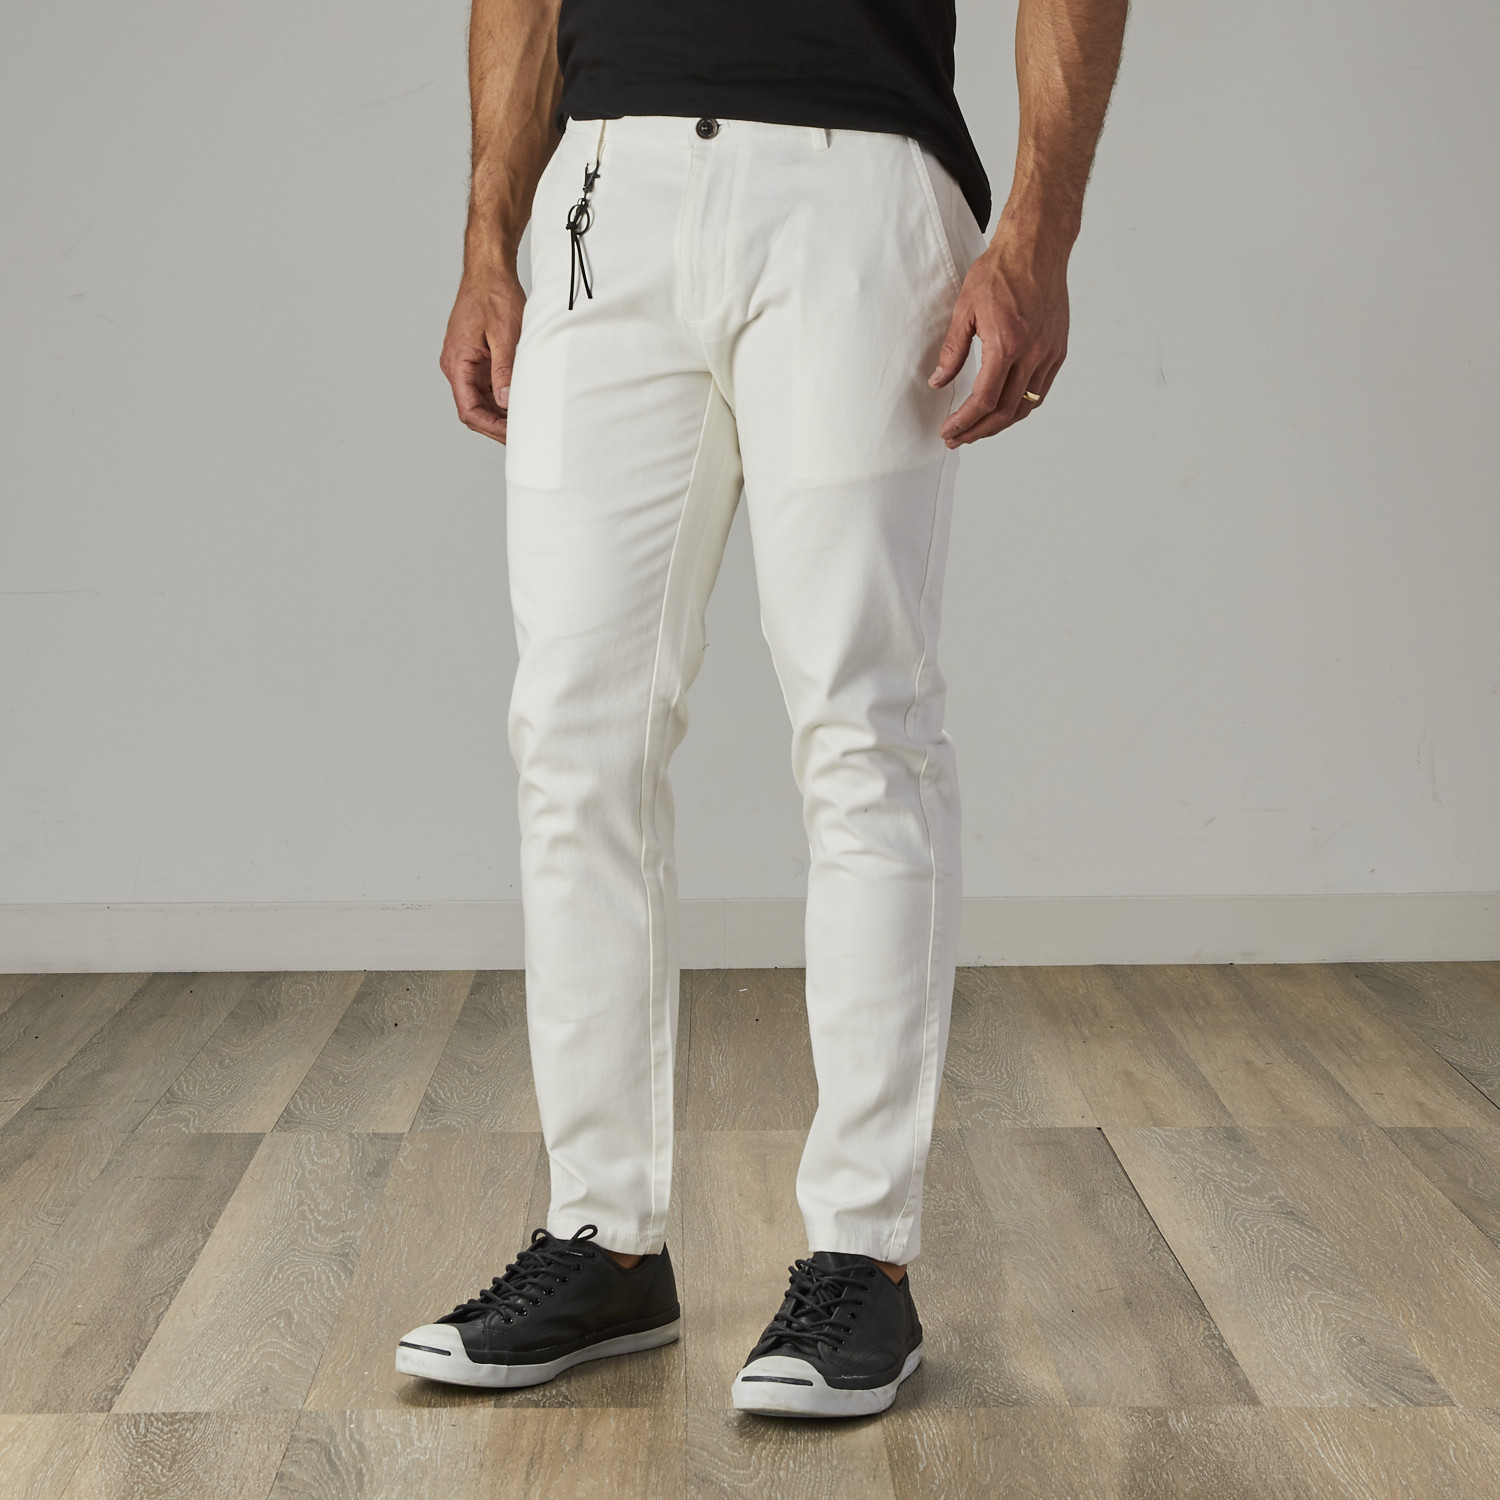 white skinny chino pants